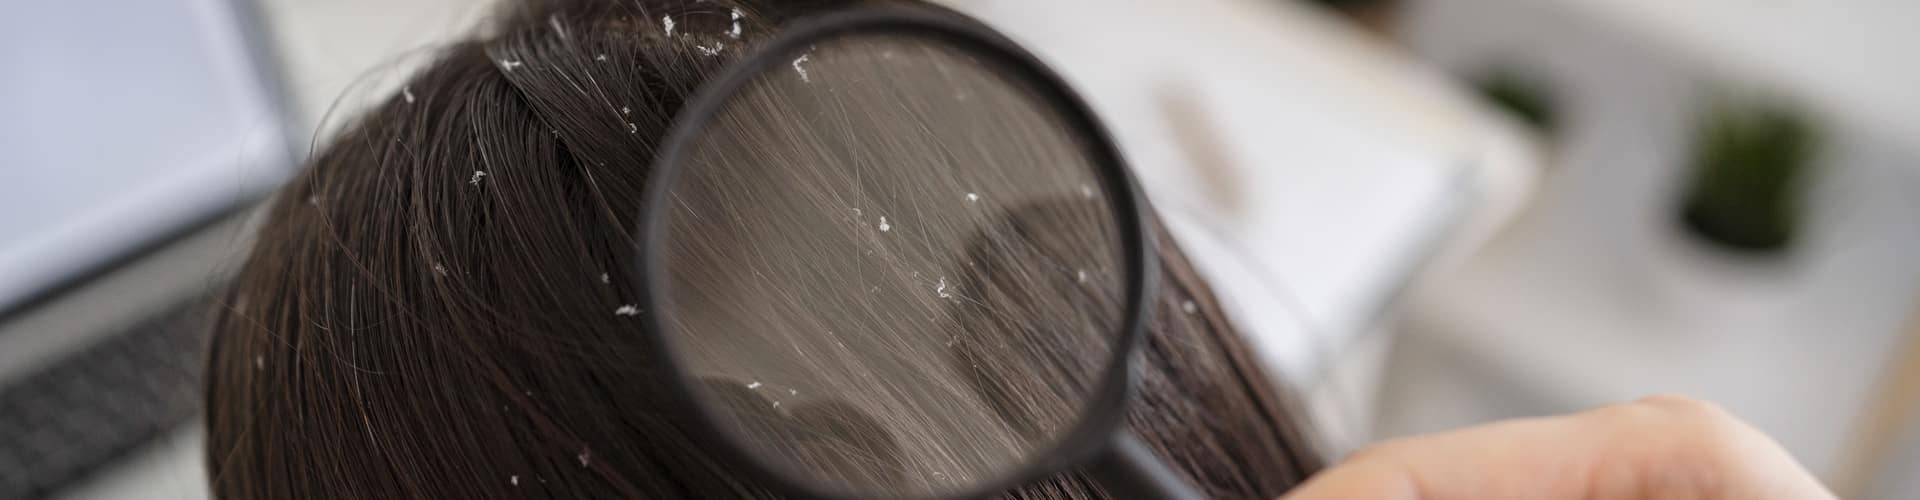 Conheça as doenças capilares que causam queda de cabelo